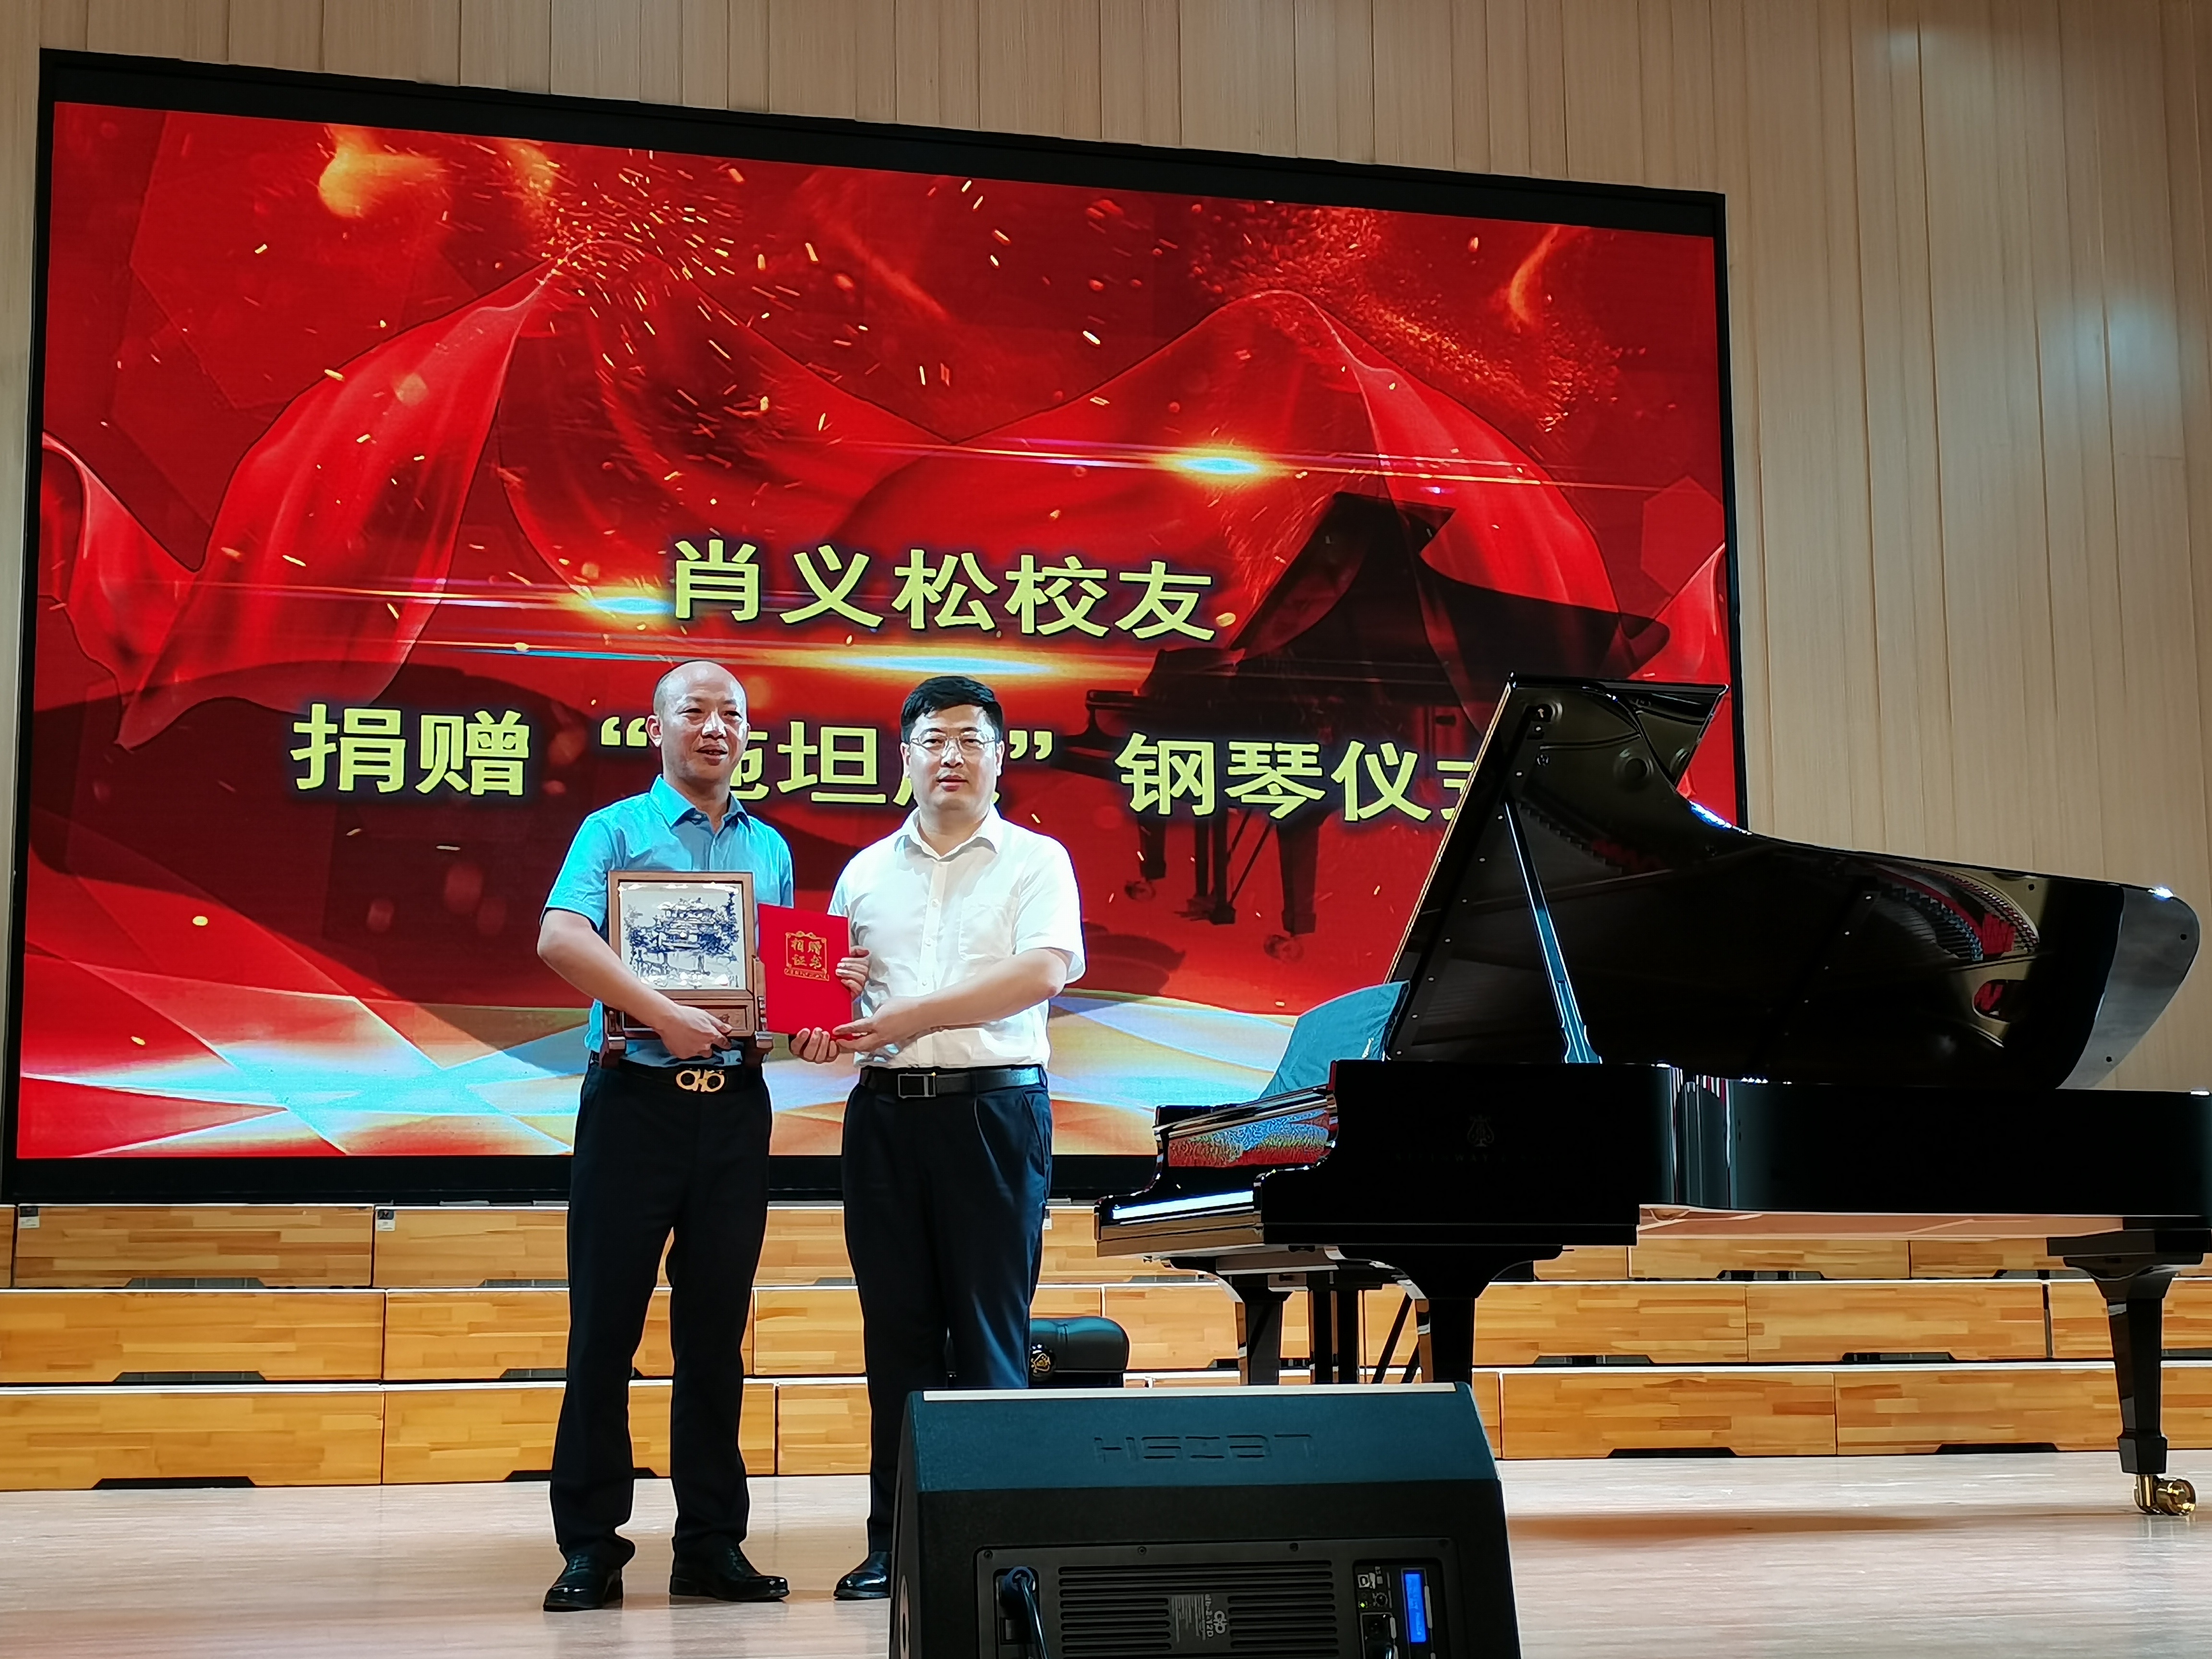 嘉应学院校友肖义松向母校捐赠价值180万的“施坦威”钢琴